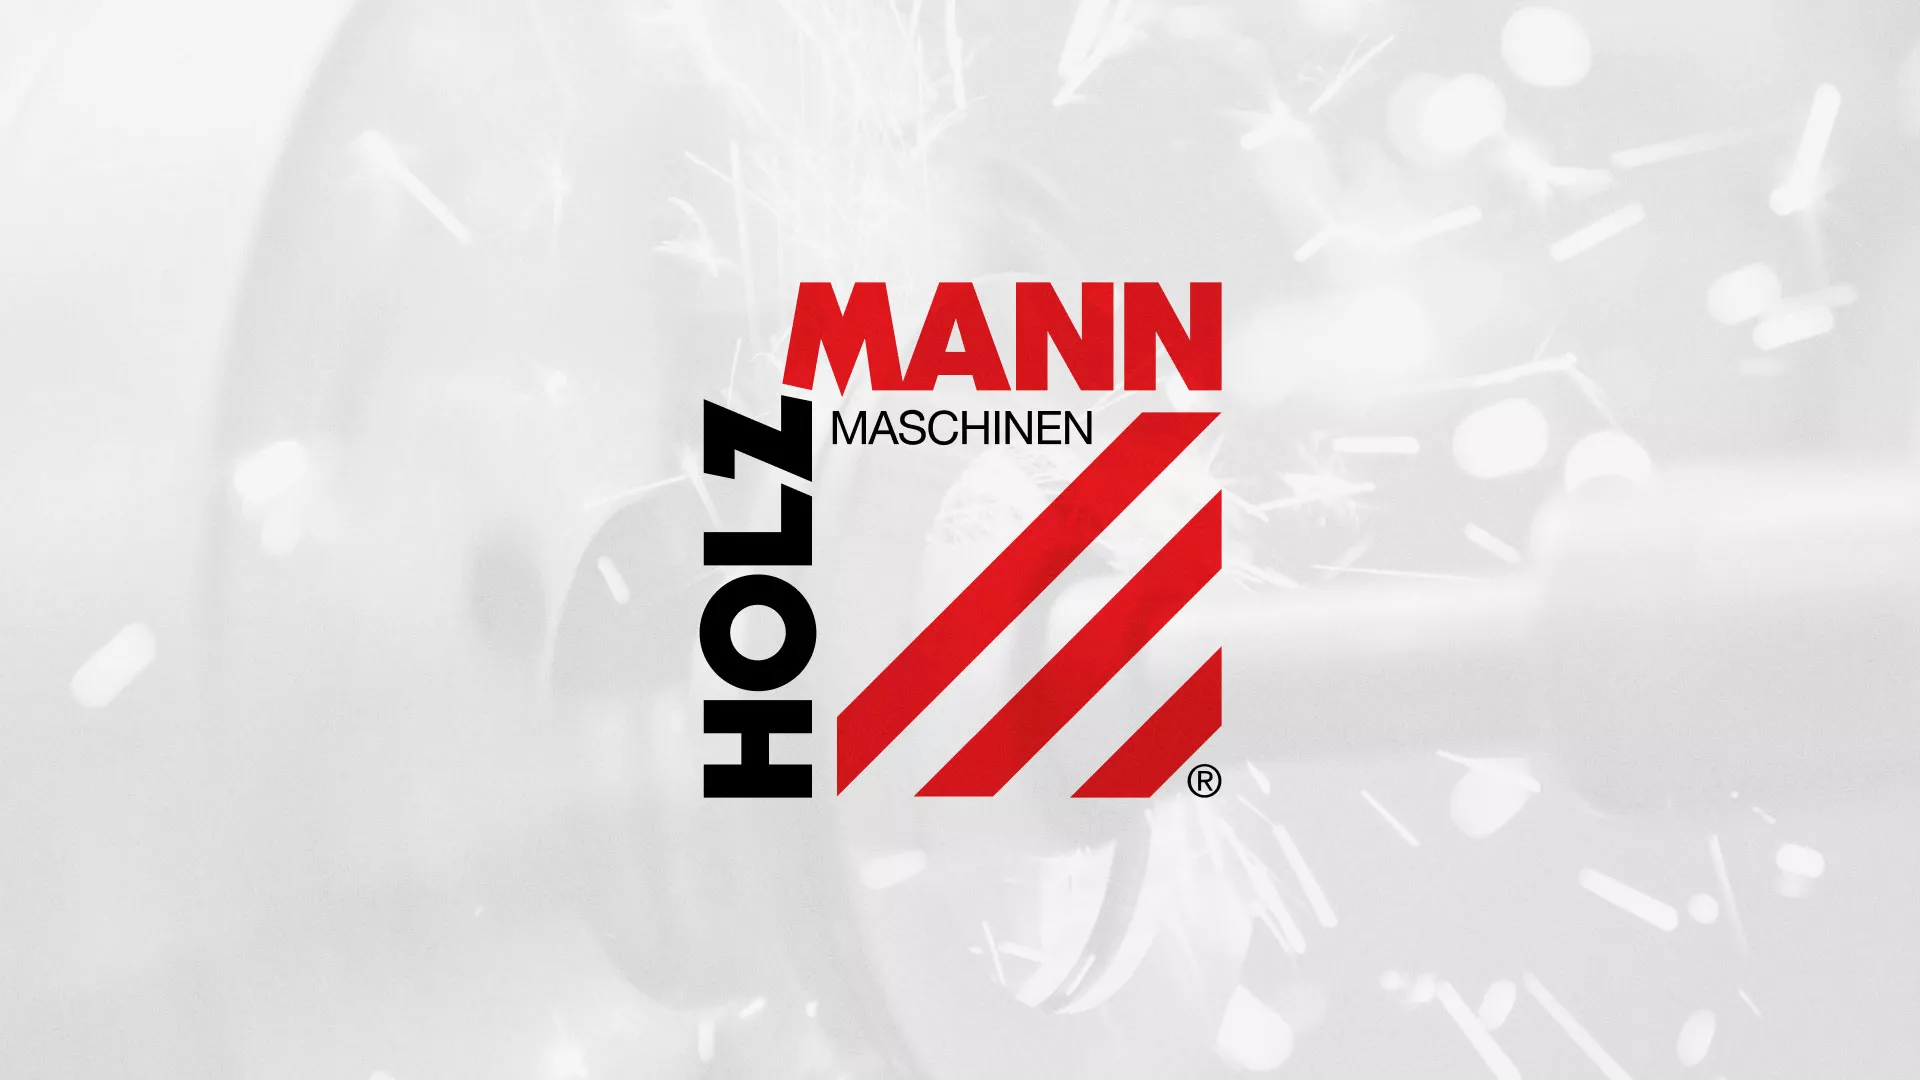 Создание сайта компании «HOLZMANN Maschinen GmbH» в Купино